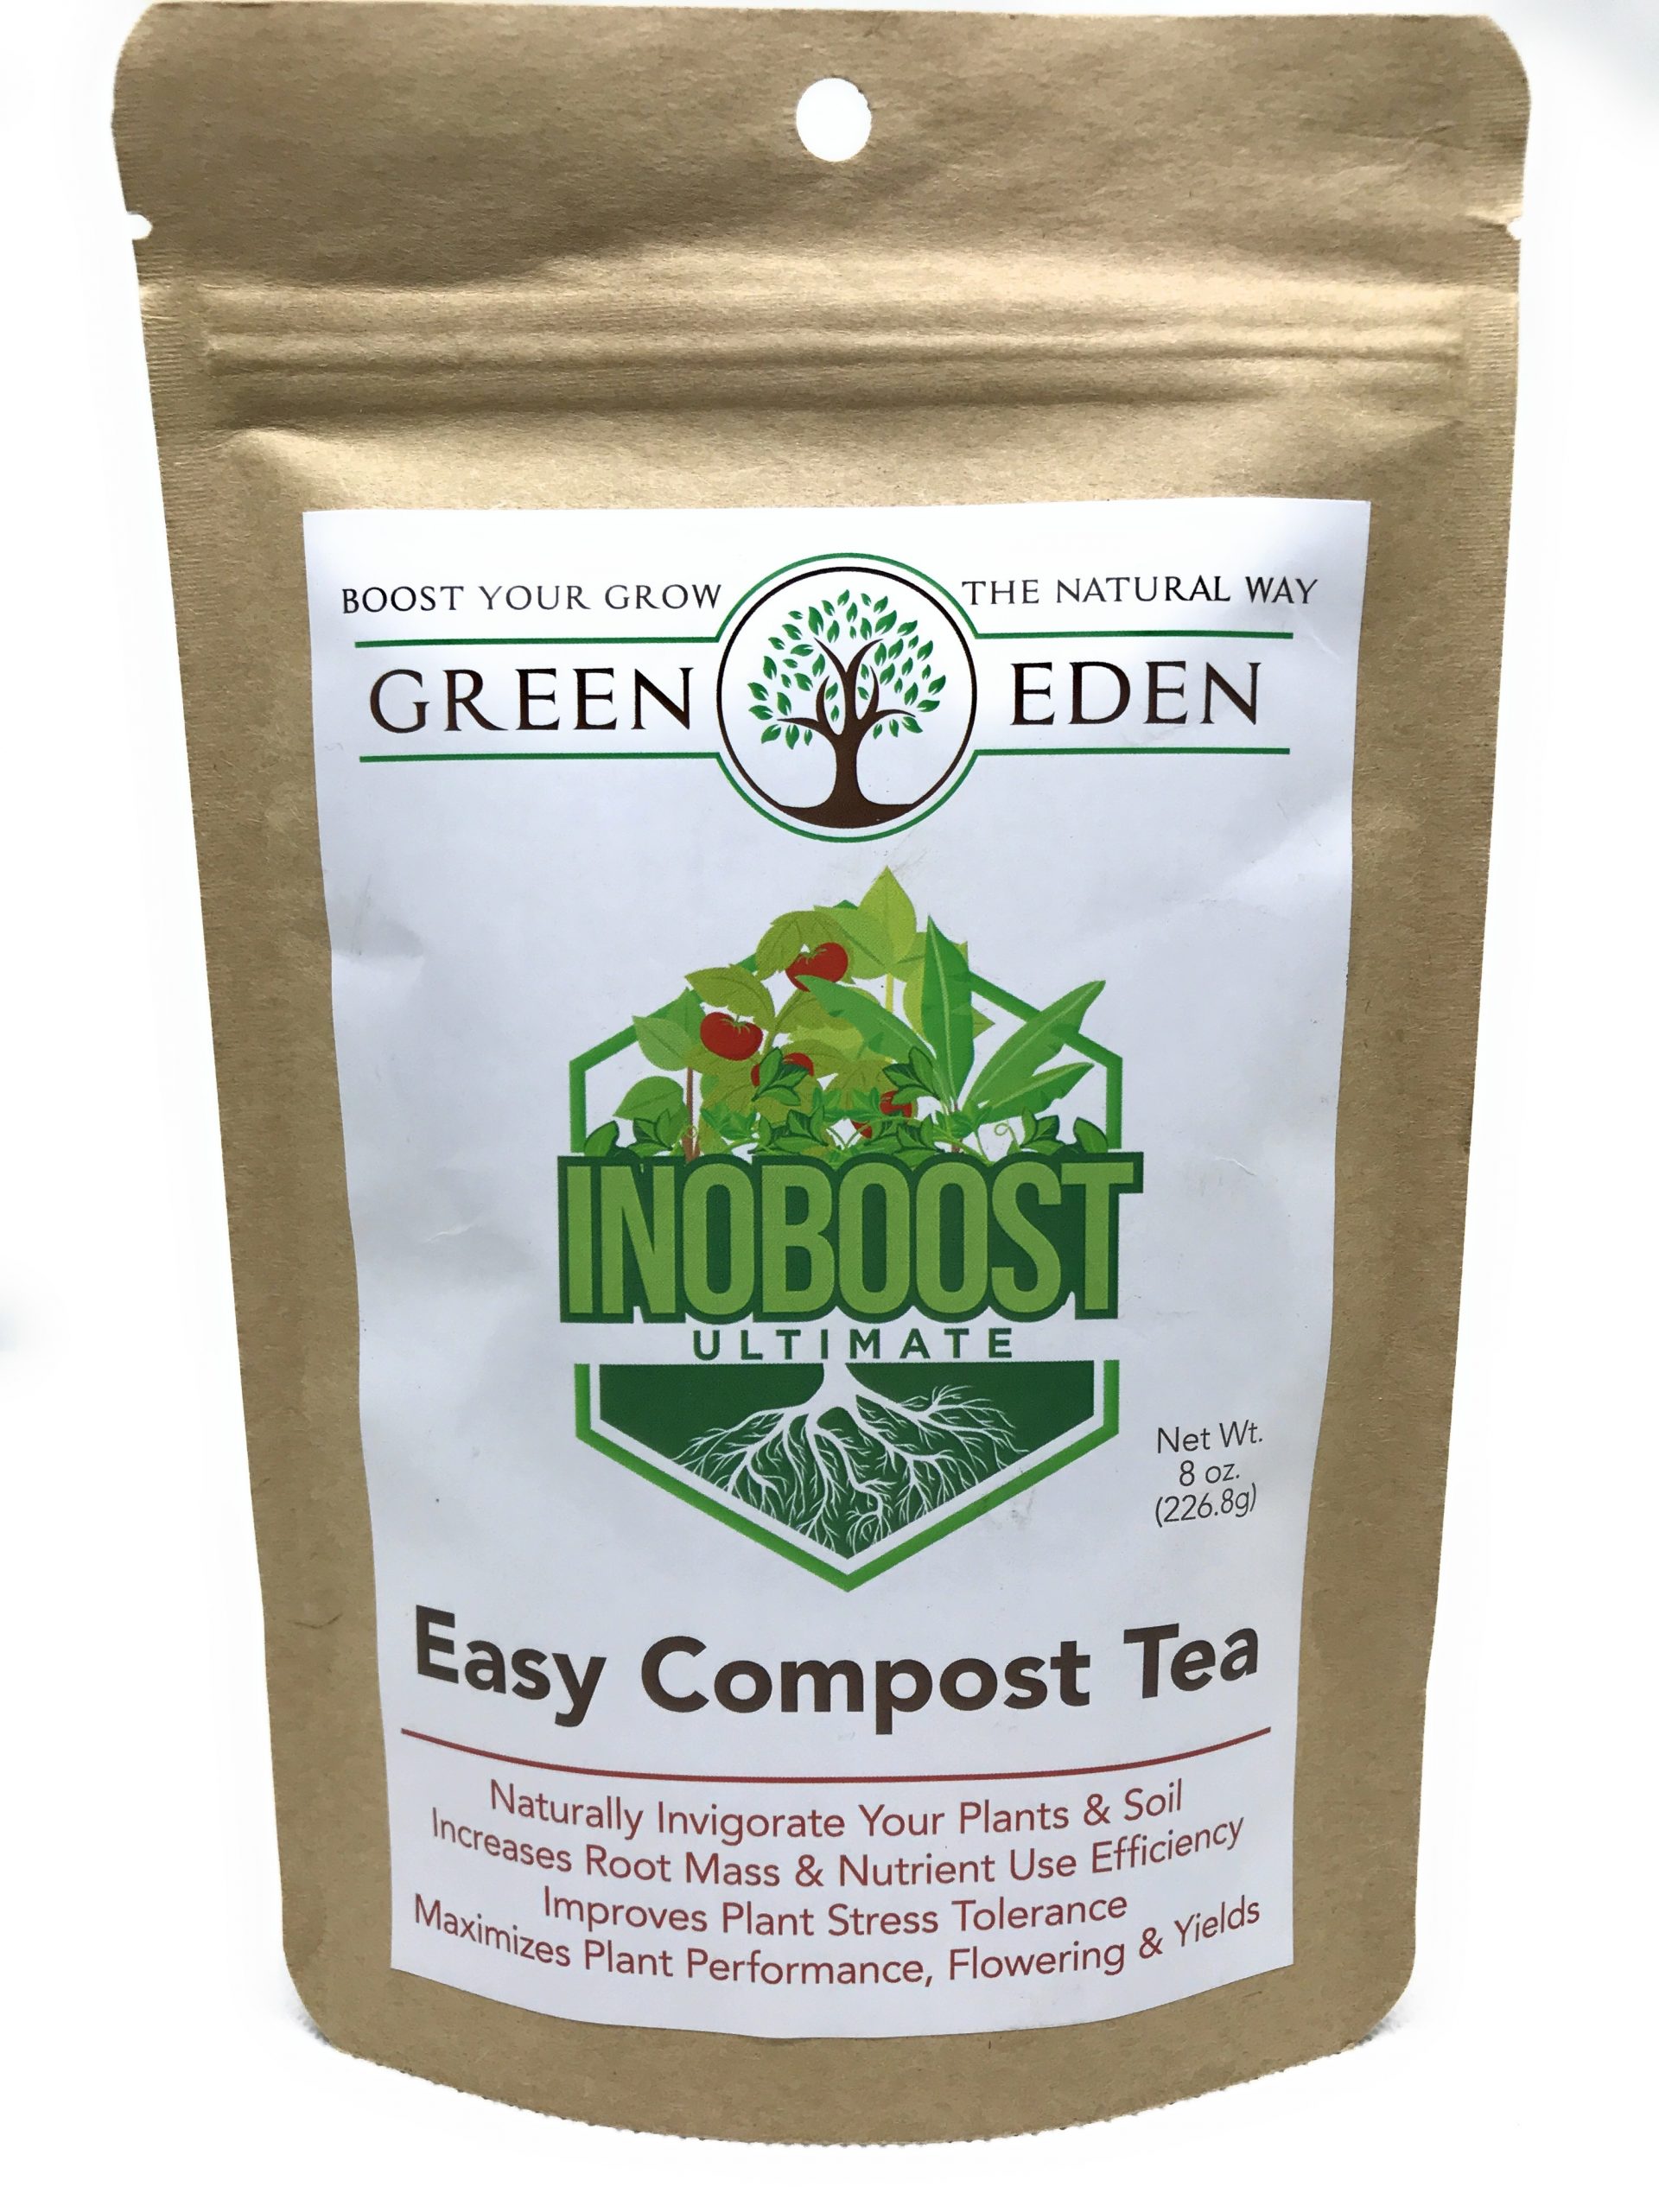 Easy Compost Tea